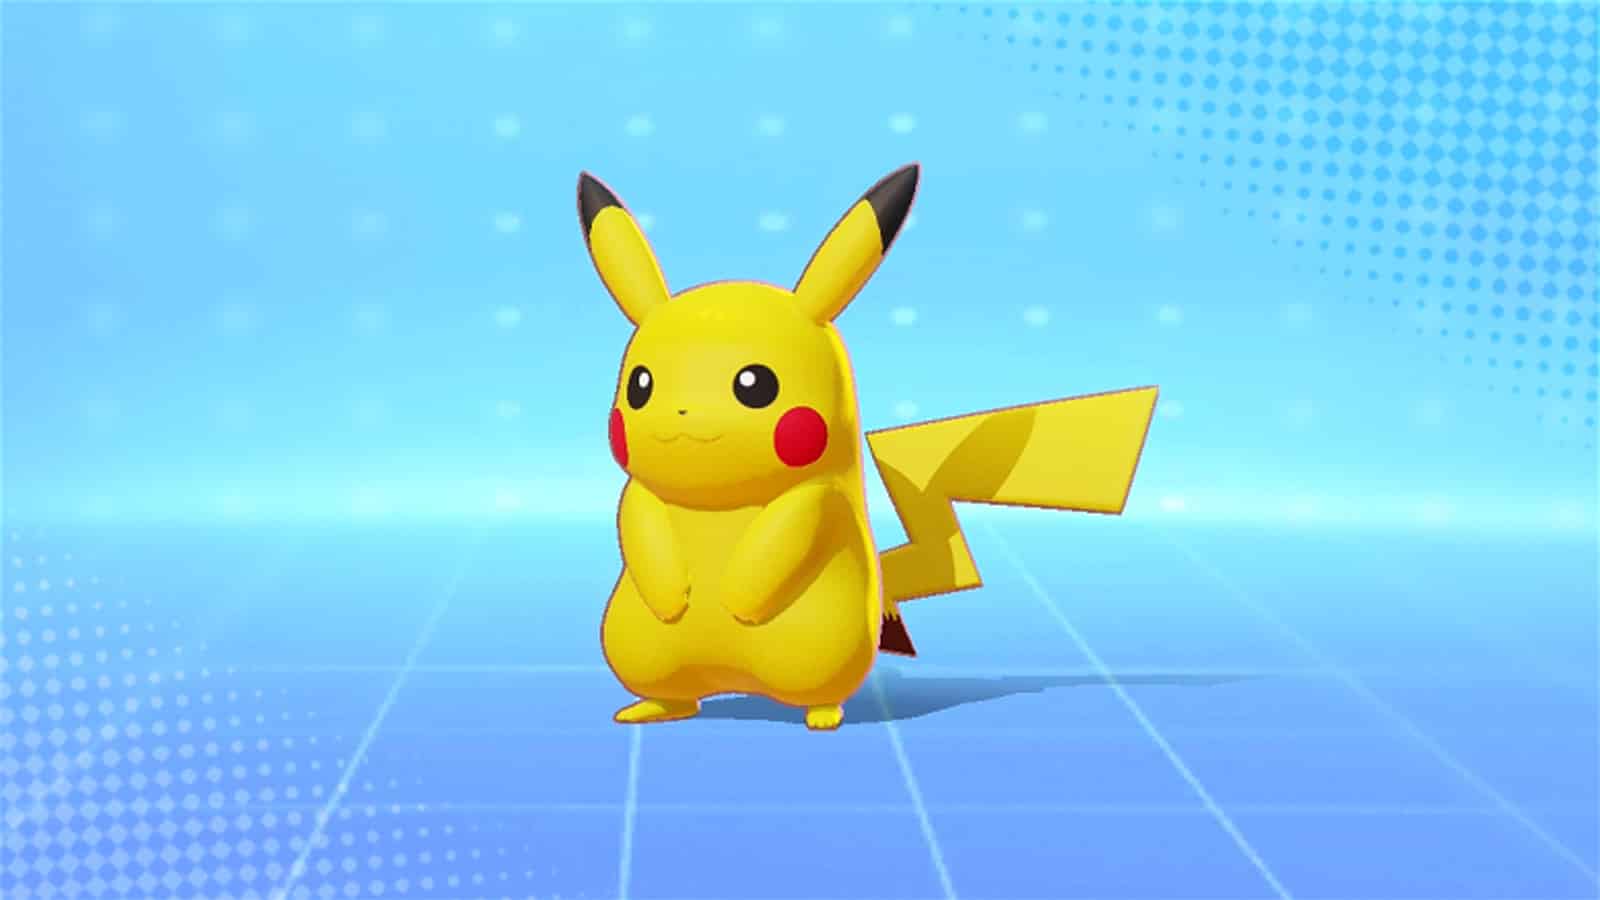 Pikachu Pokémon starter Pokémon Unite